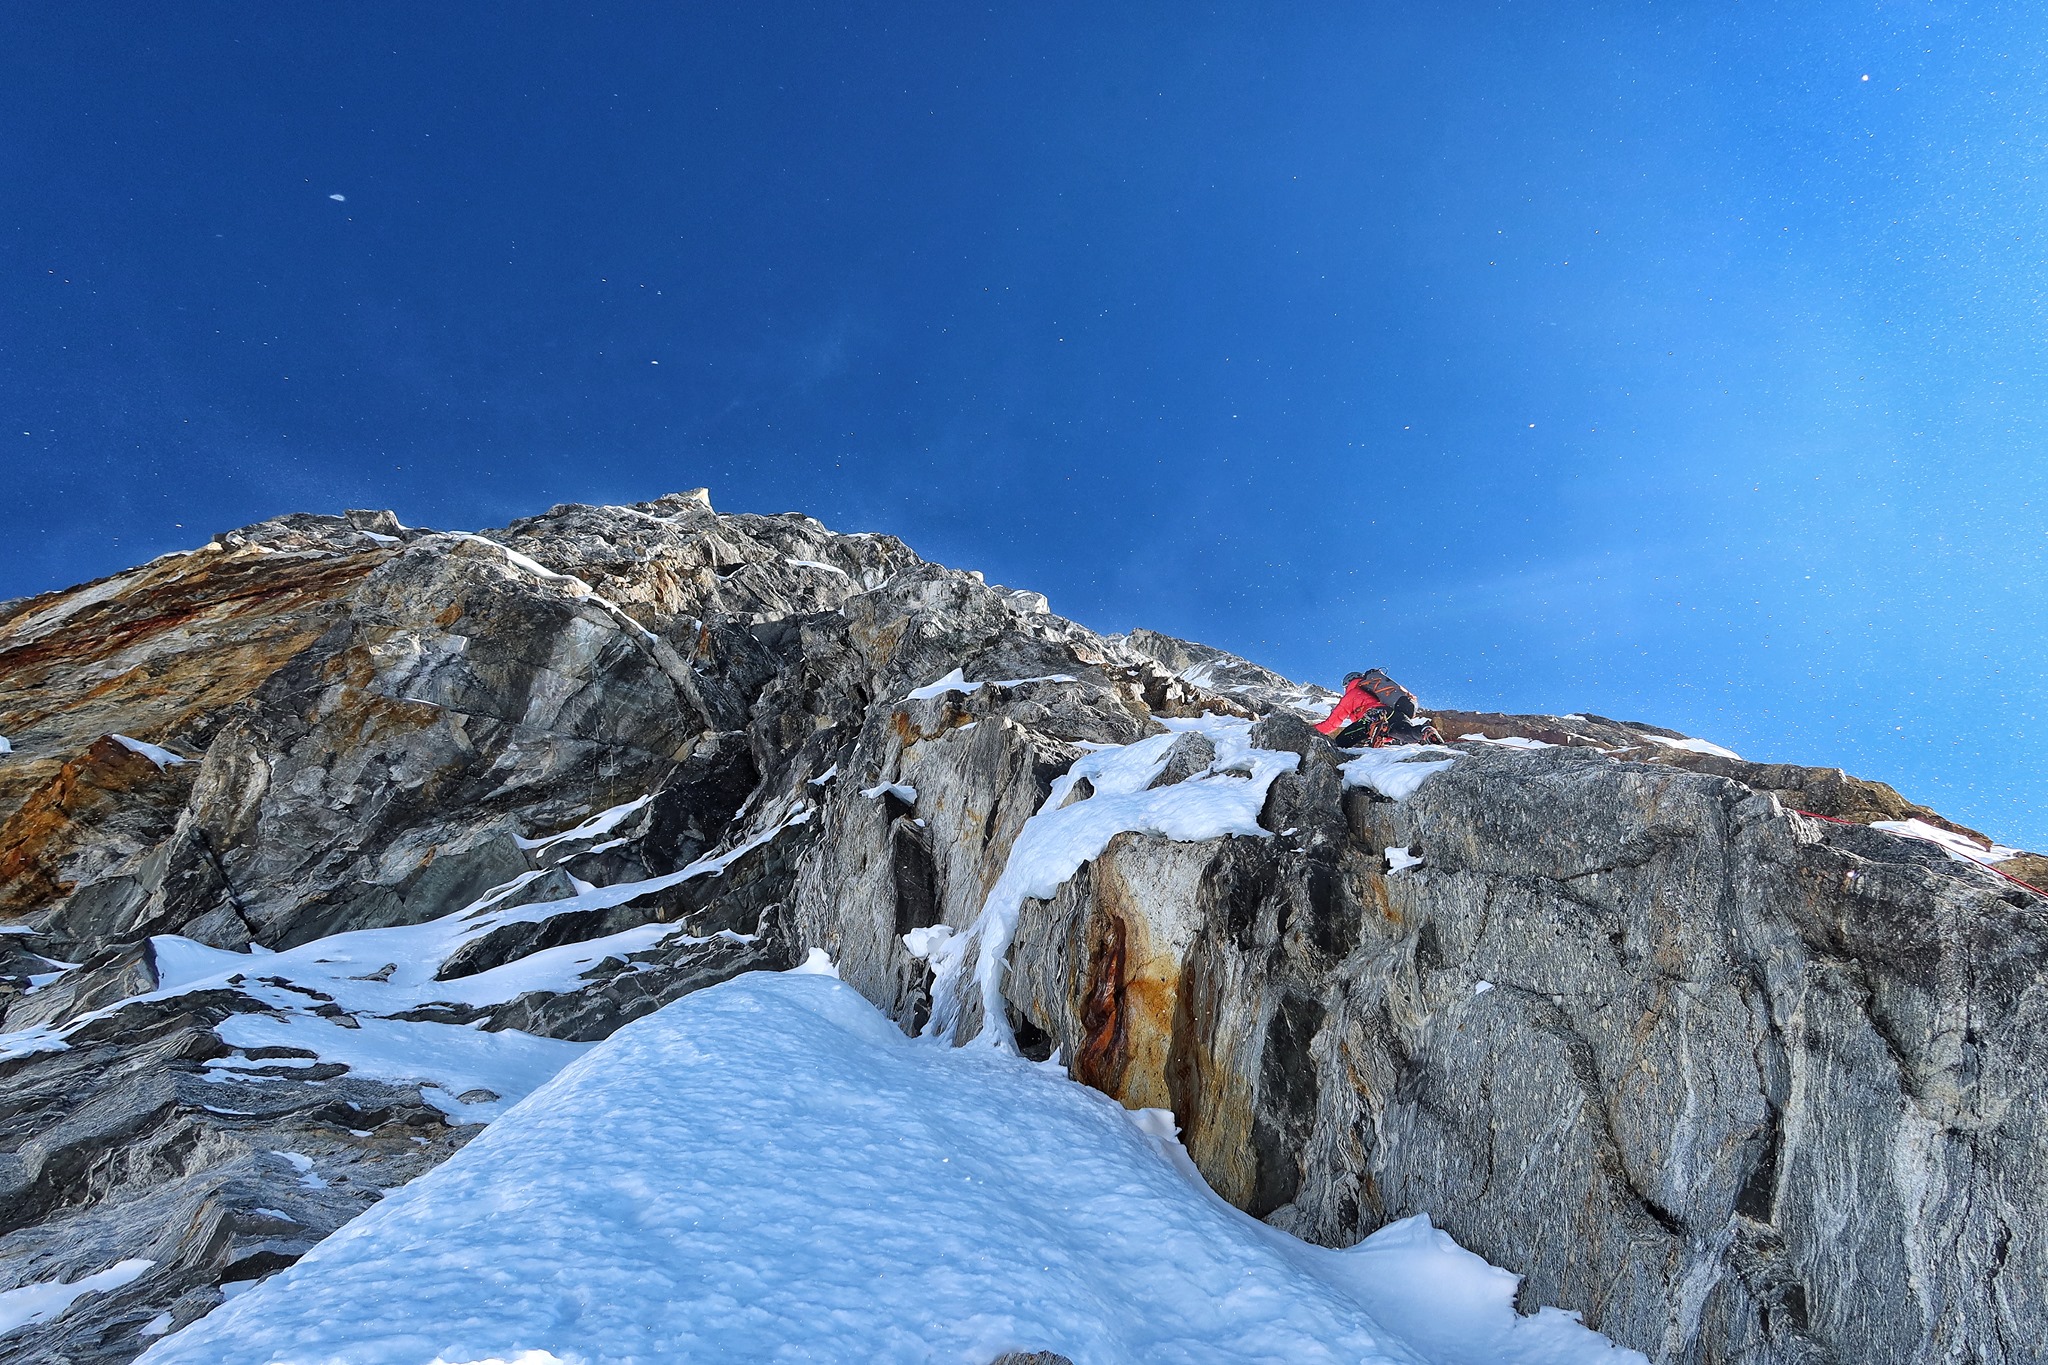 Лука Стражар (Luka Stražar) и Нейч Марчич (Nejc Marčič) на маршруте SlovenianDirect (ED, M5, AI5, 1700 м) по западной стене на вершину горы Чобутце (Chobutse), известной также под именем Тсободже (Tsoboje) высотой 6686 метров